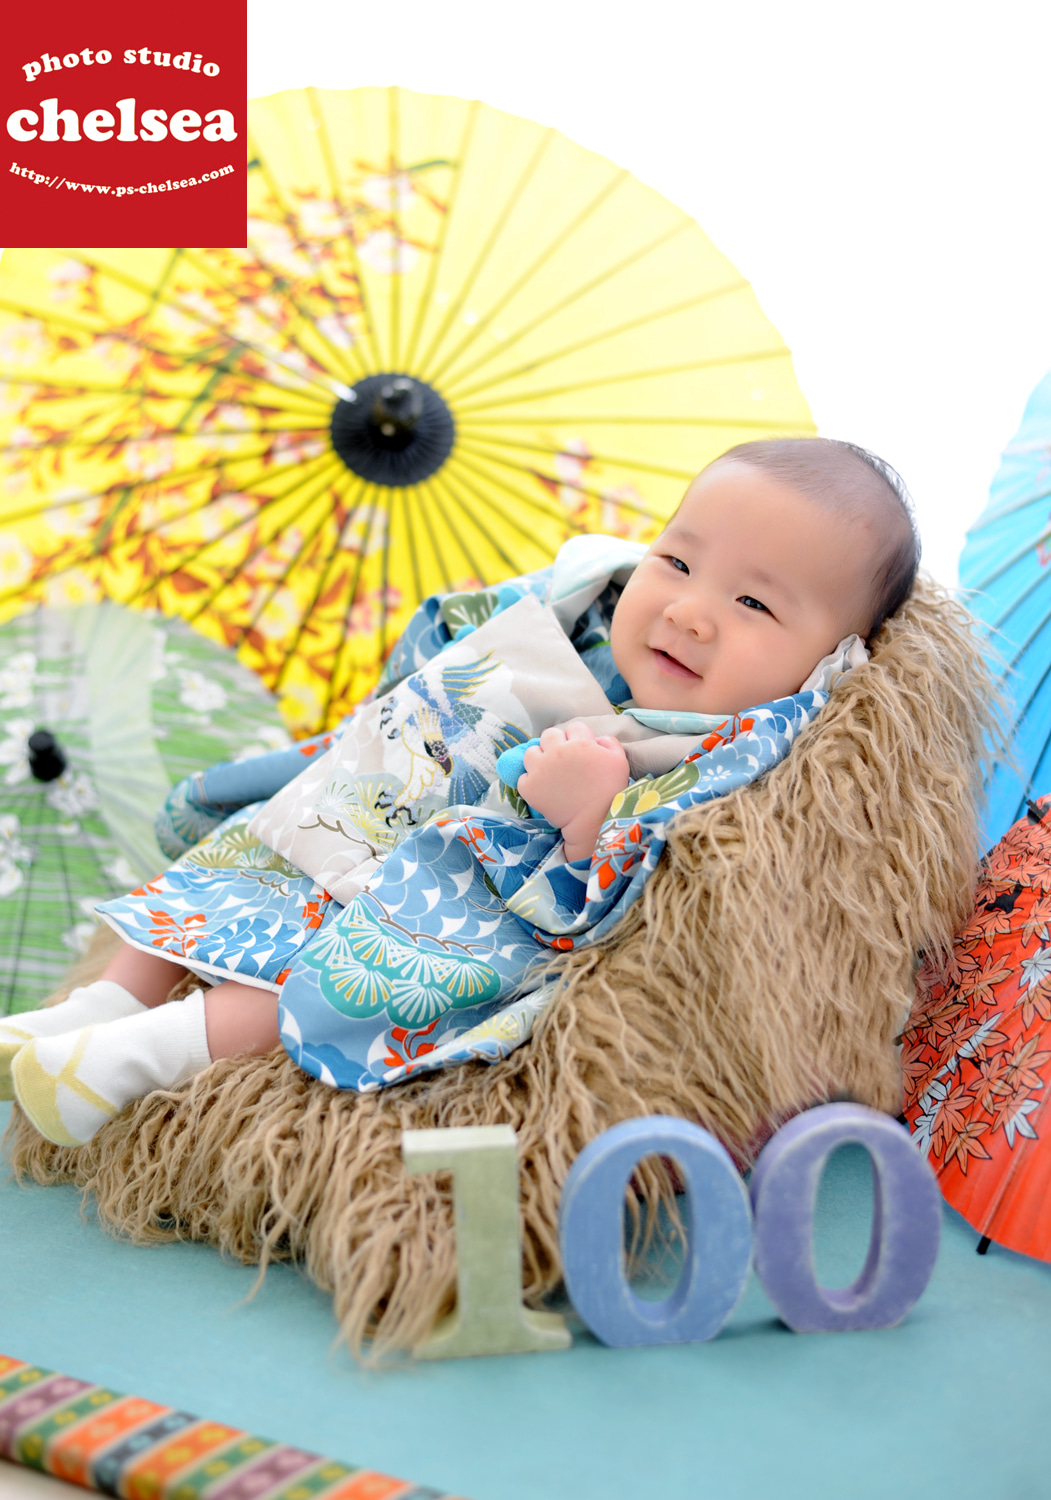 笑った顔が最高に可愛い赤ちゃんです 百日記念のお客様です フォトスタジオチェルシー埼玉県入間市のおしゃれな写真館